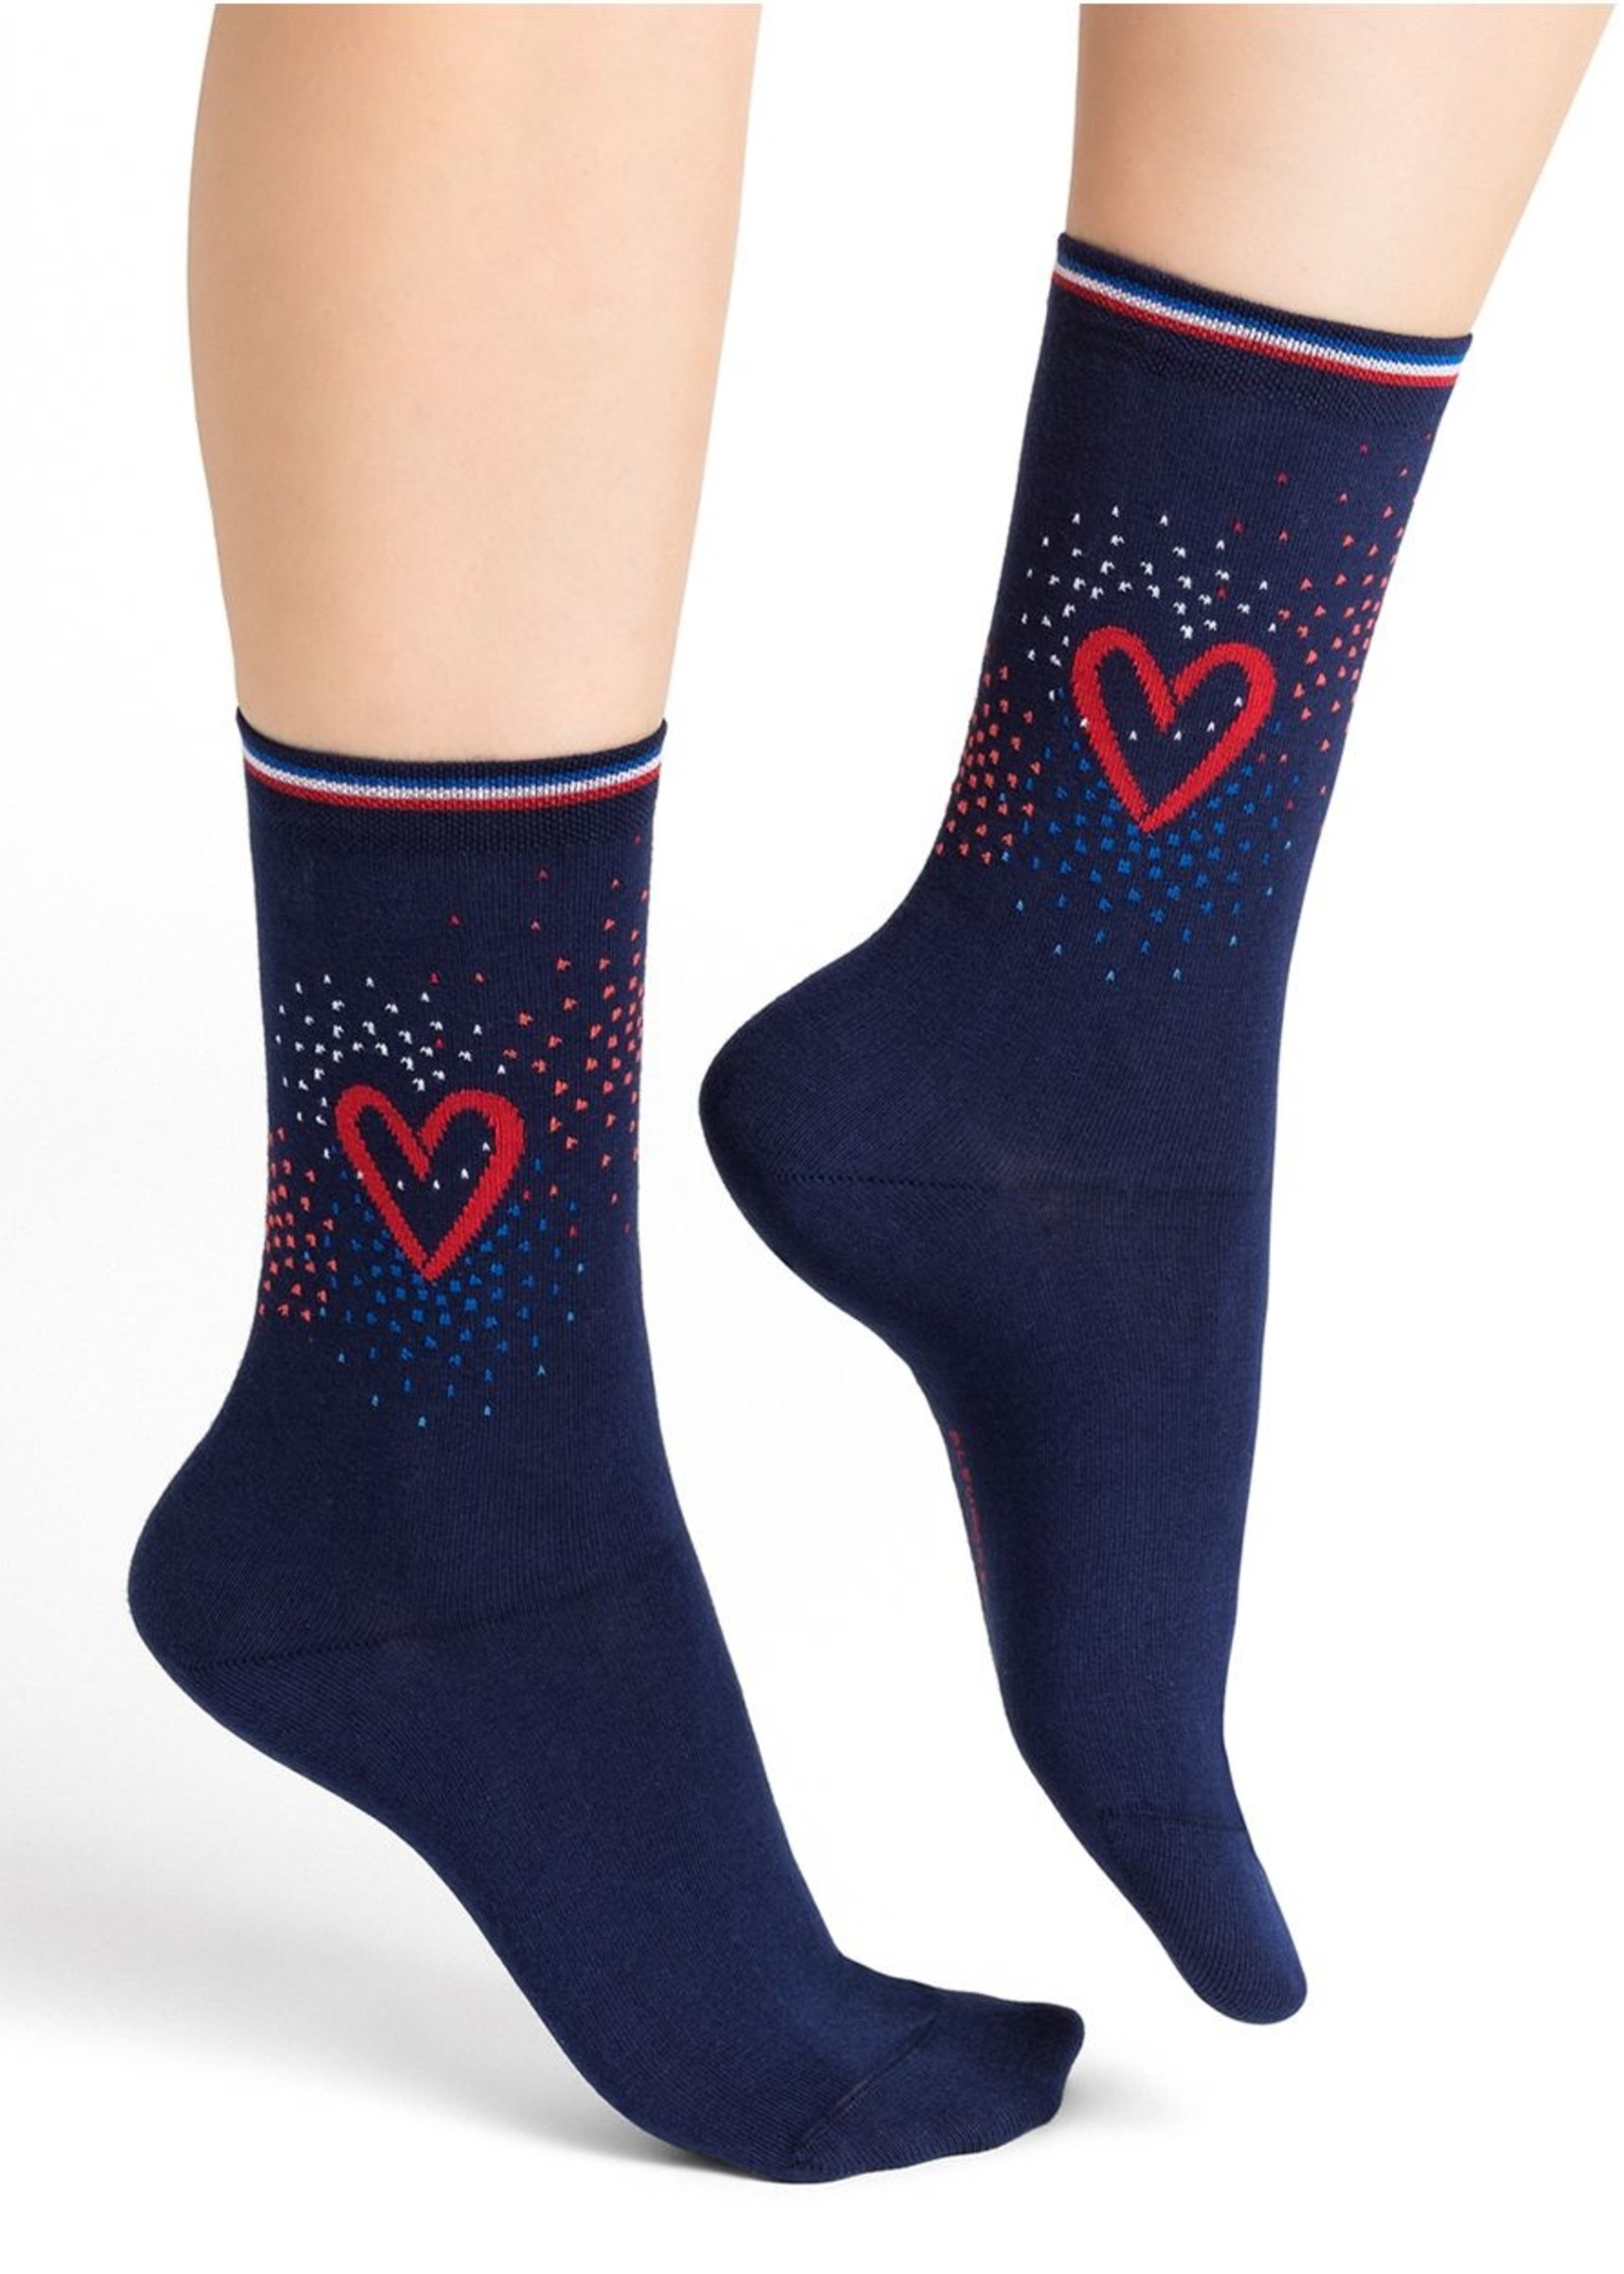 Bleu Foret Bleu foret side pattern heart socks 6371